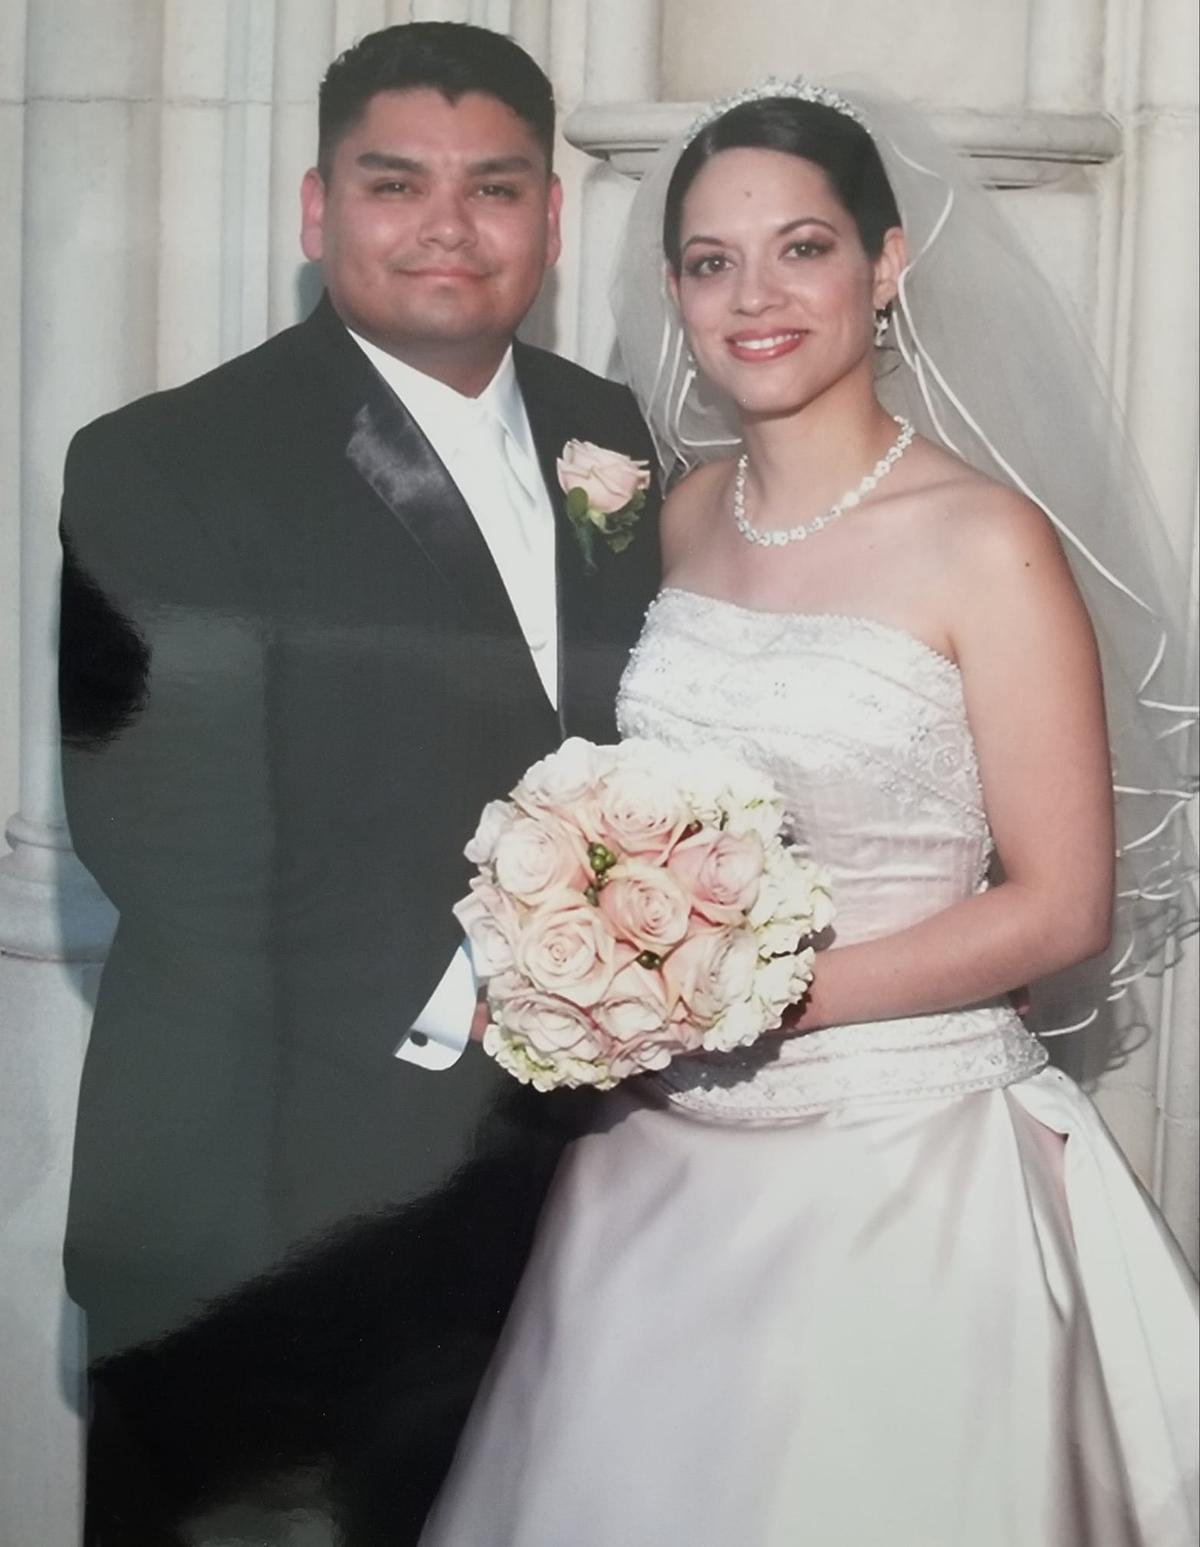 Billy and his wife, Sonya Kypuros, on their wedding day (Courtesy of <a href="https://www.facebook.com/skypuros">Sonya Kypuros</a>)